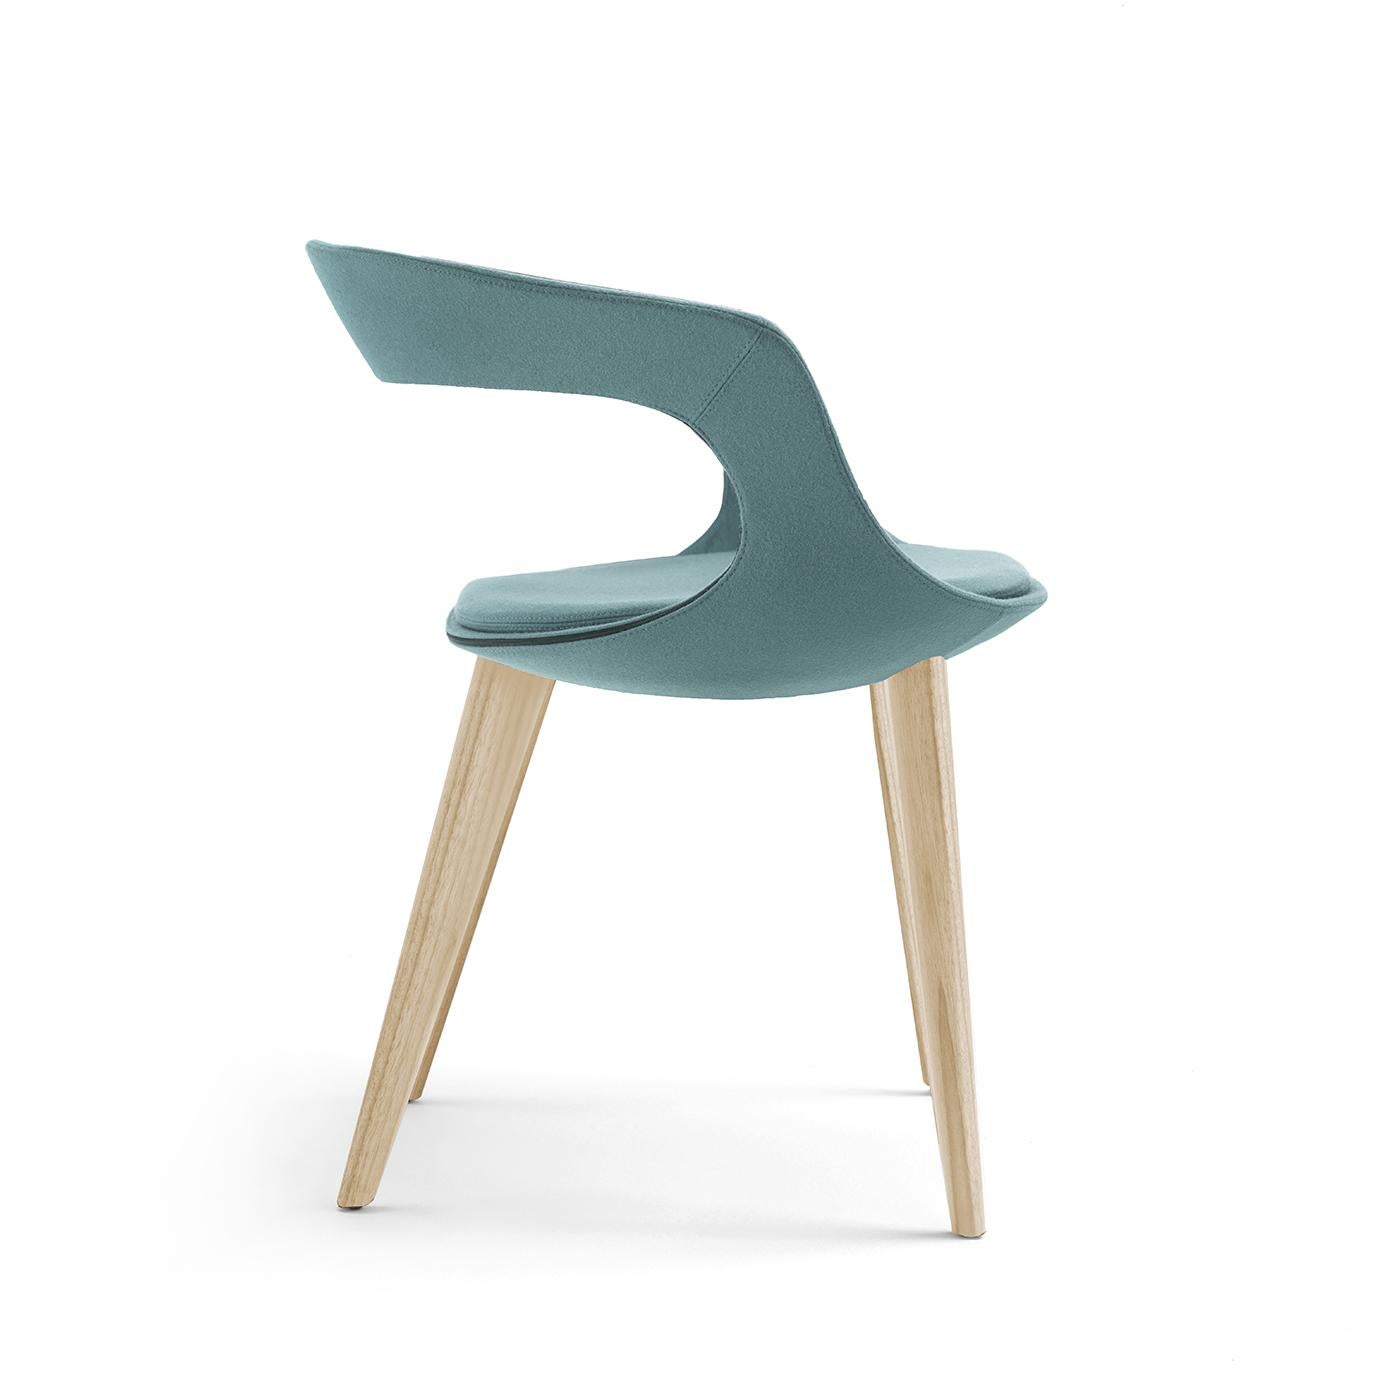 Dieser einladende, attraktive Stuhl zeichnet sich durch sein elegantes und bequemes Design aus. Sein Sockel besteht aus vier Holzbeinen aus Eschenholz und einer Stahlschale, die mit hellbraunem Filz überzogen ist und mit Polyurethanschaumpolsterung